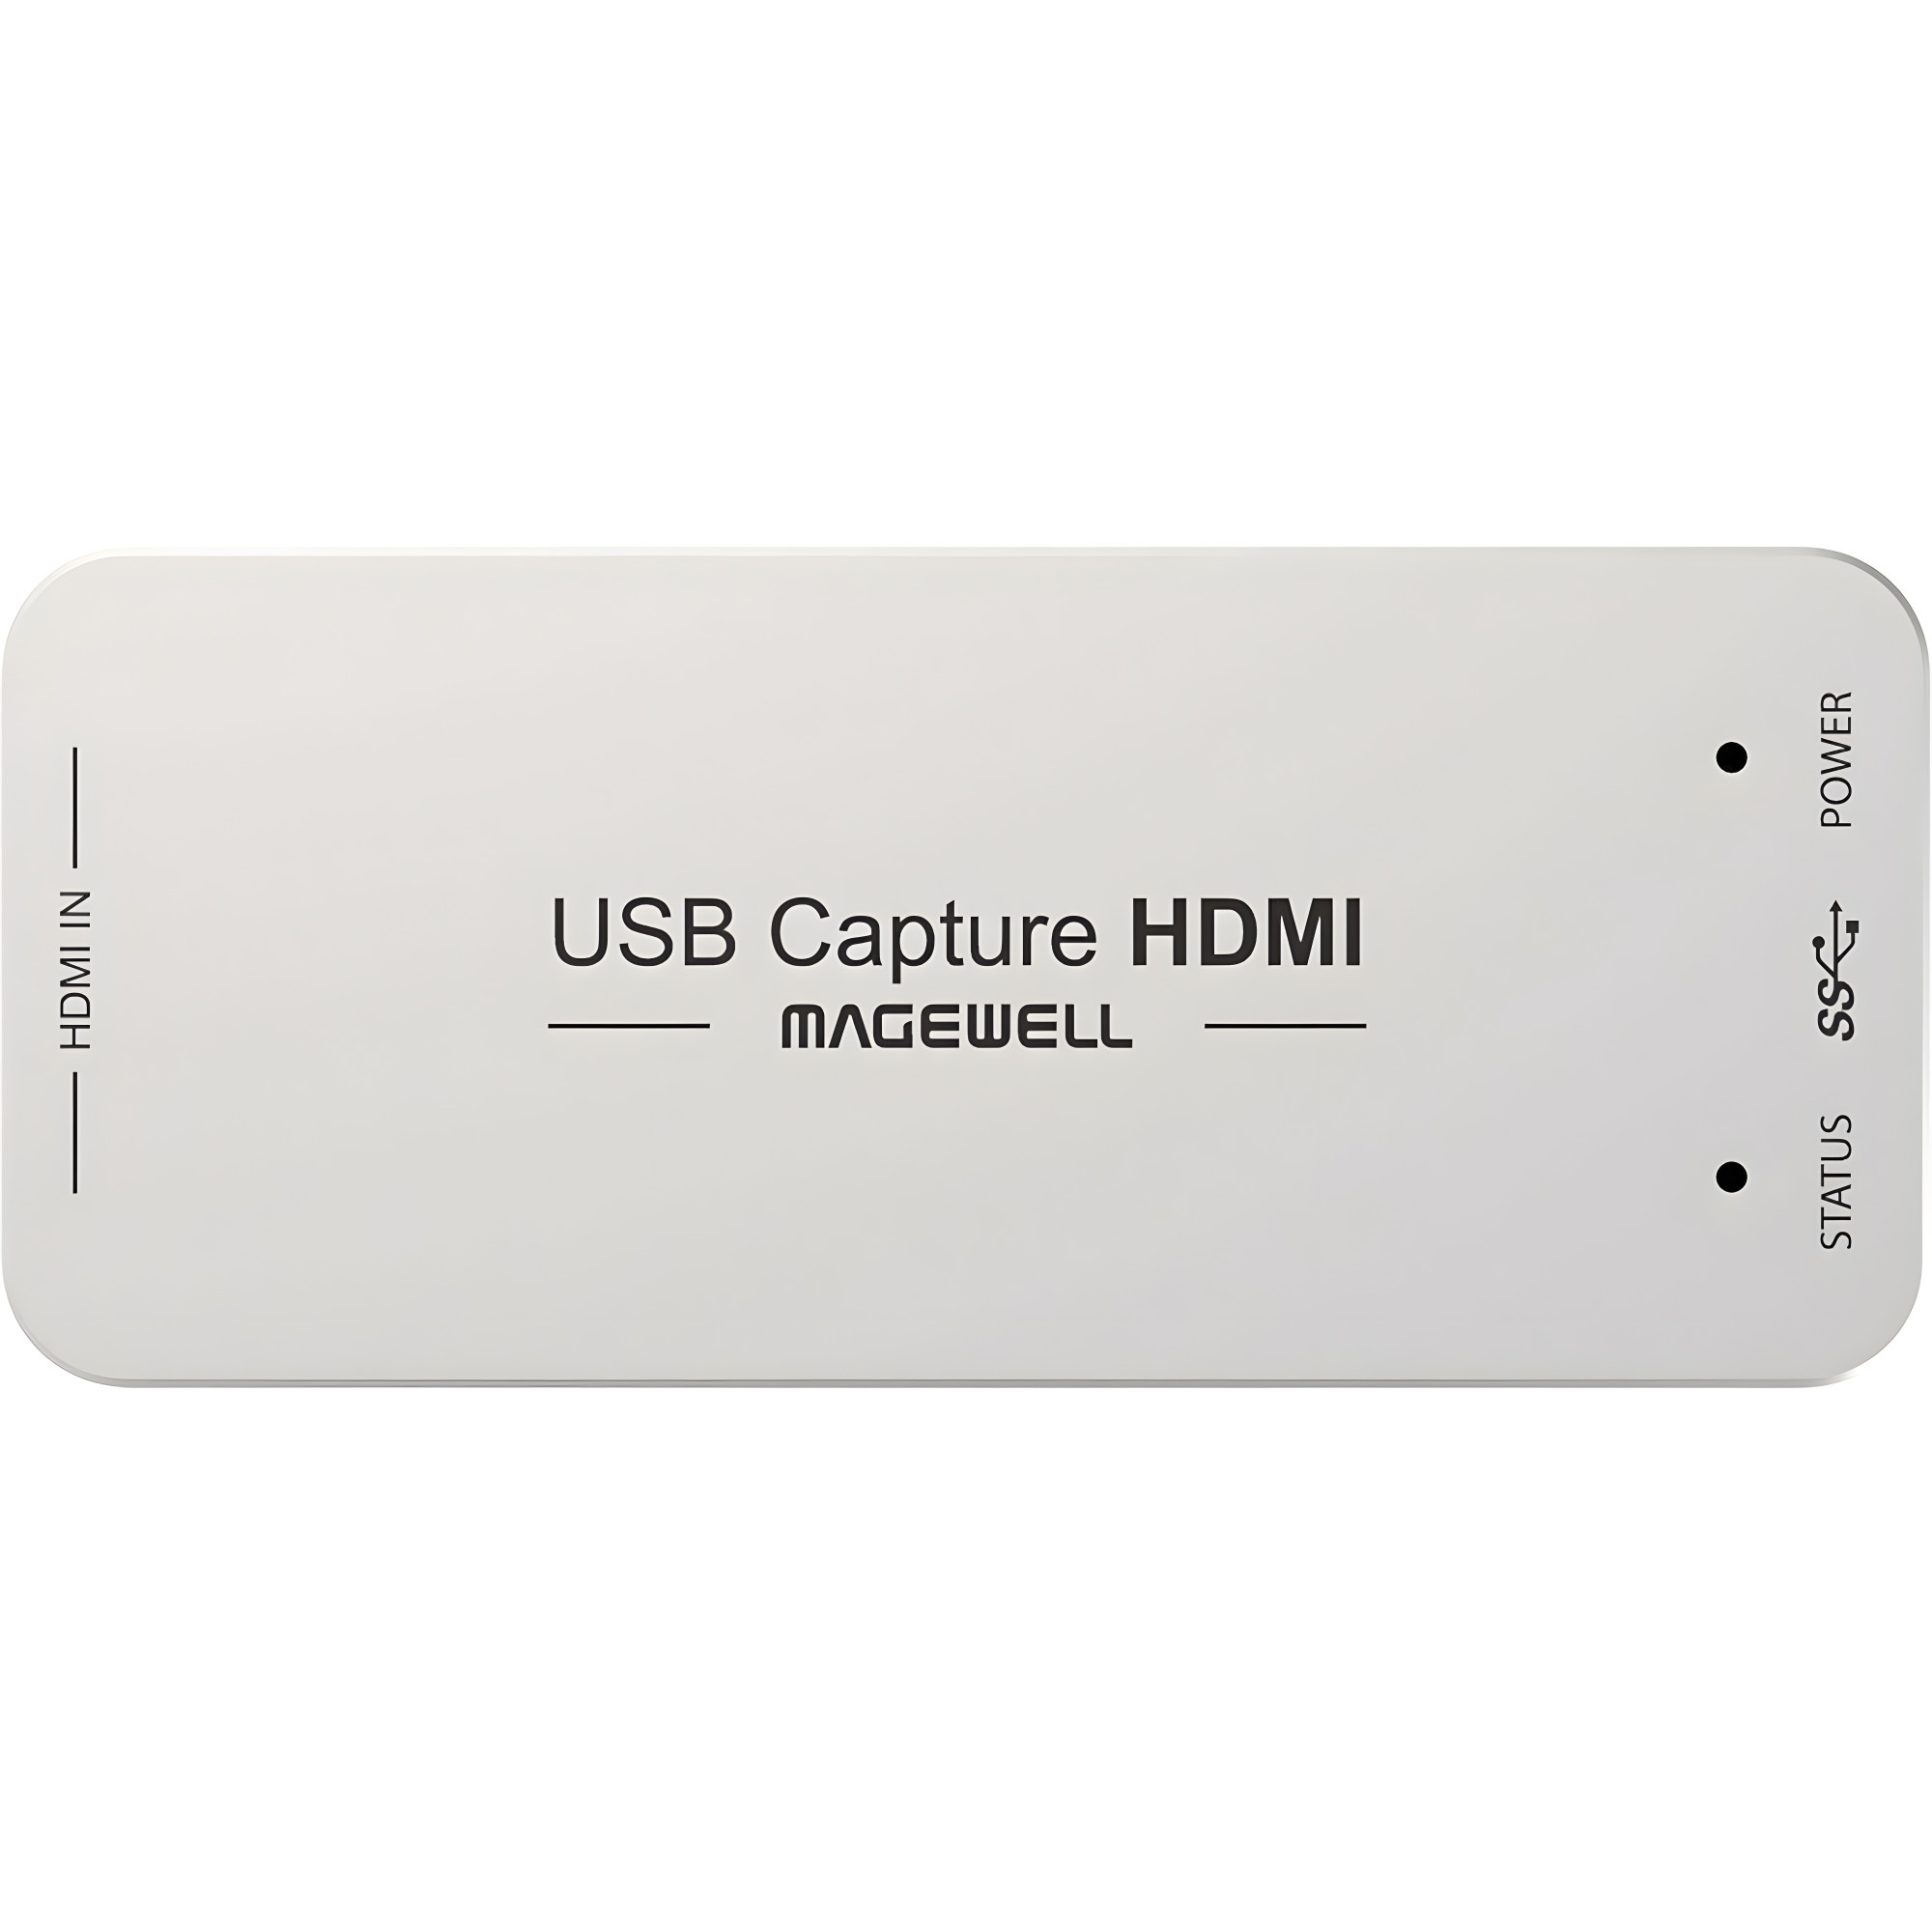 Magewell USB Capture HDMI Gen 2 (32060) | Carte d'acquisition vidéo, USB Grabber